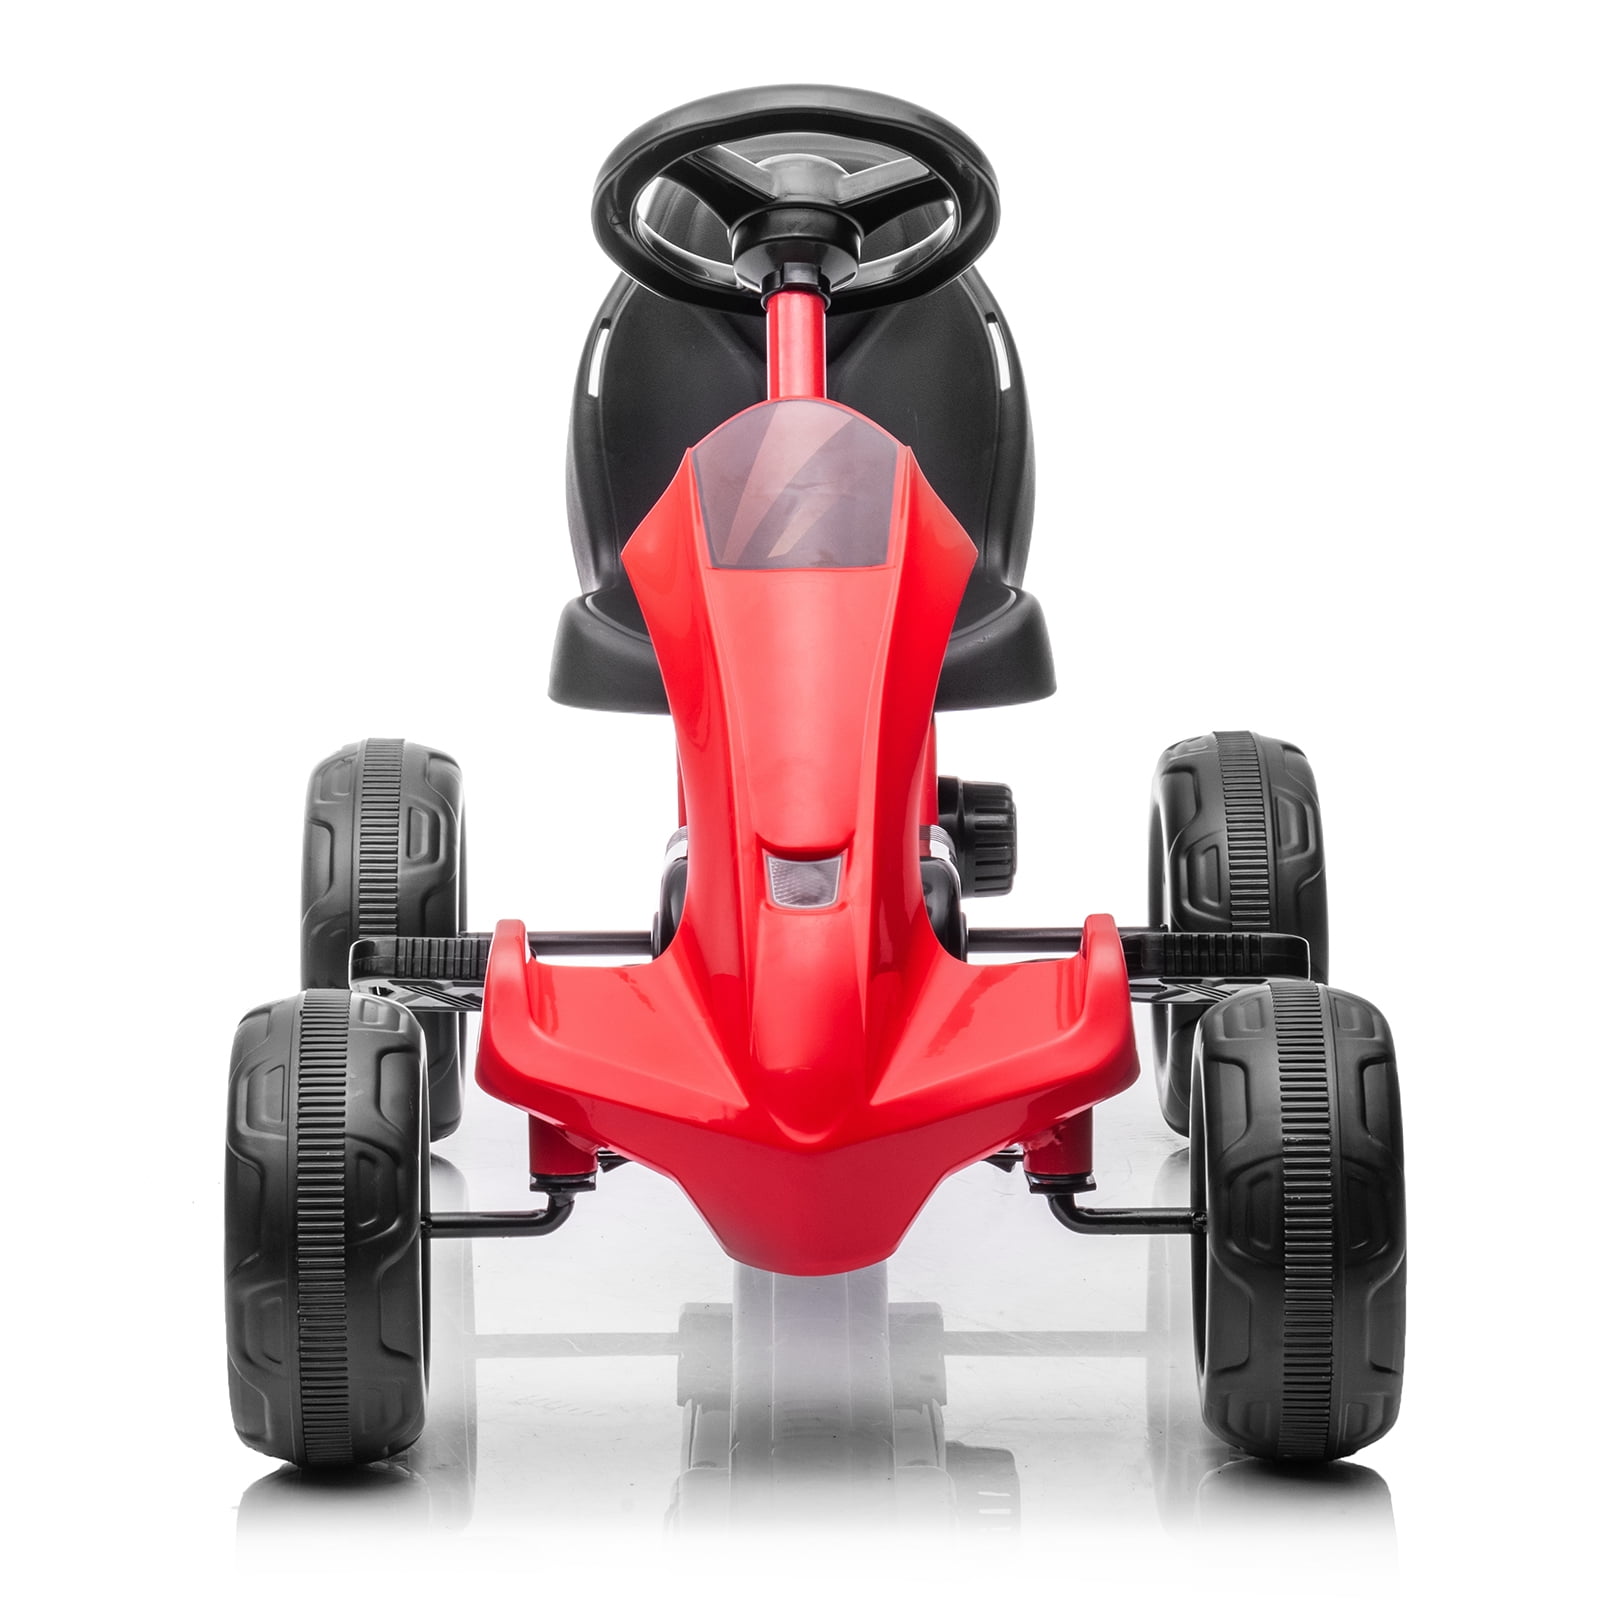 Kids' Pedal Cars for Outdoor Kids Ride on Kart for Boys Girls 4-Wheeled Pedal Powered Ride-On Go Kart Racer w/ 3-Level Adjustable Bucket Seat & Non-Slip Wheels Black FFlyer Go Kart for Kids 